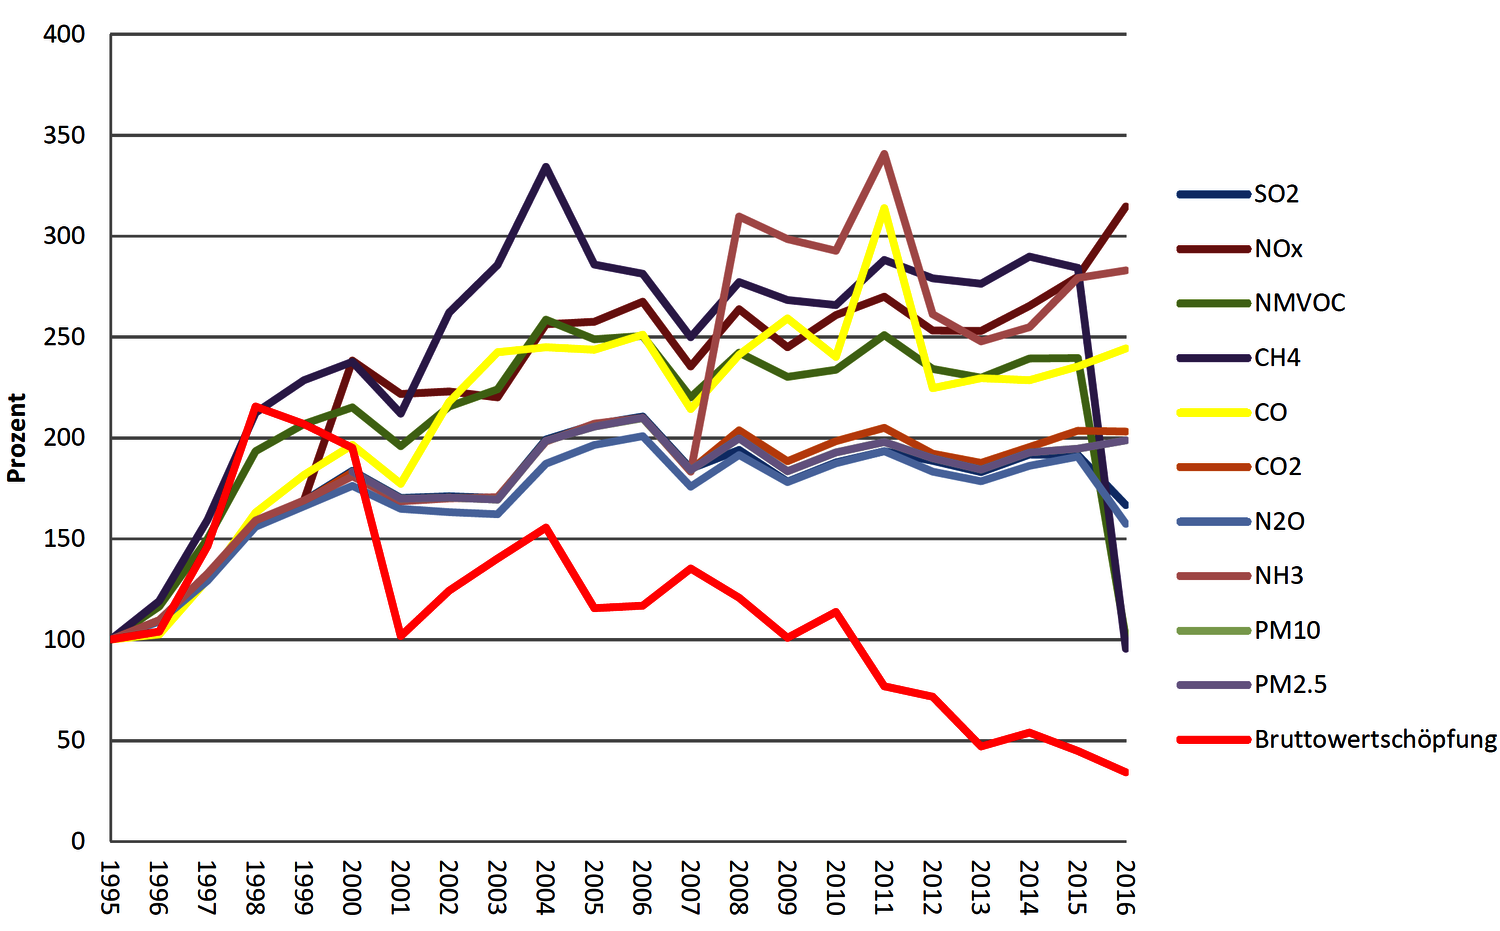 Abbildung mit Entwicklung von Luftemissionen und Bruttowertschöpfung im Flugverkehr 1995 bis 2016